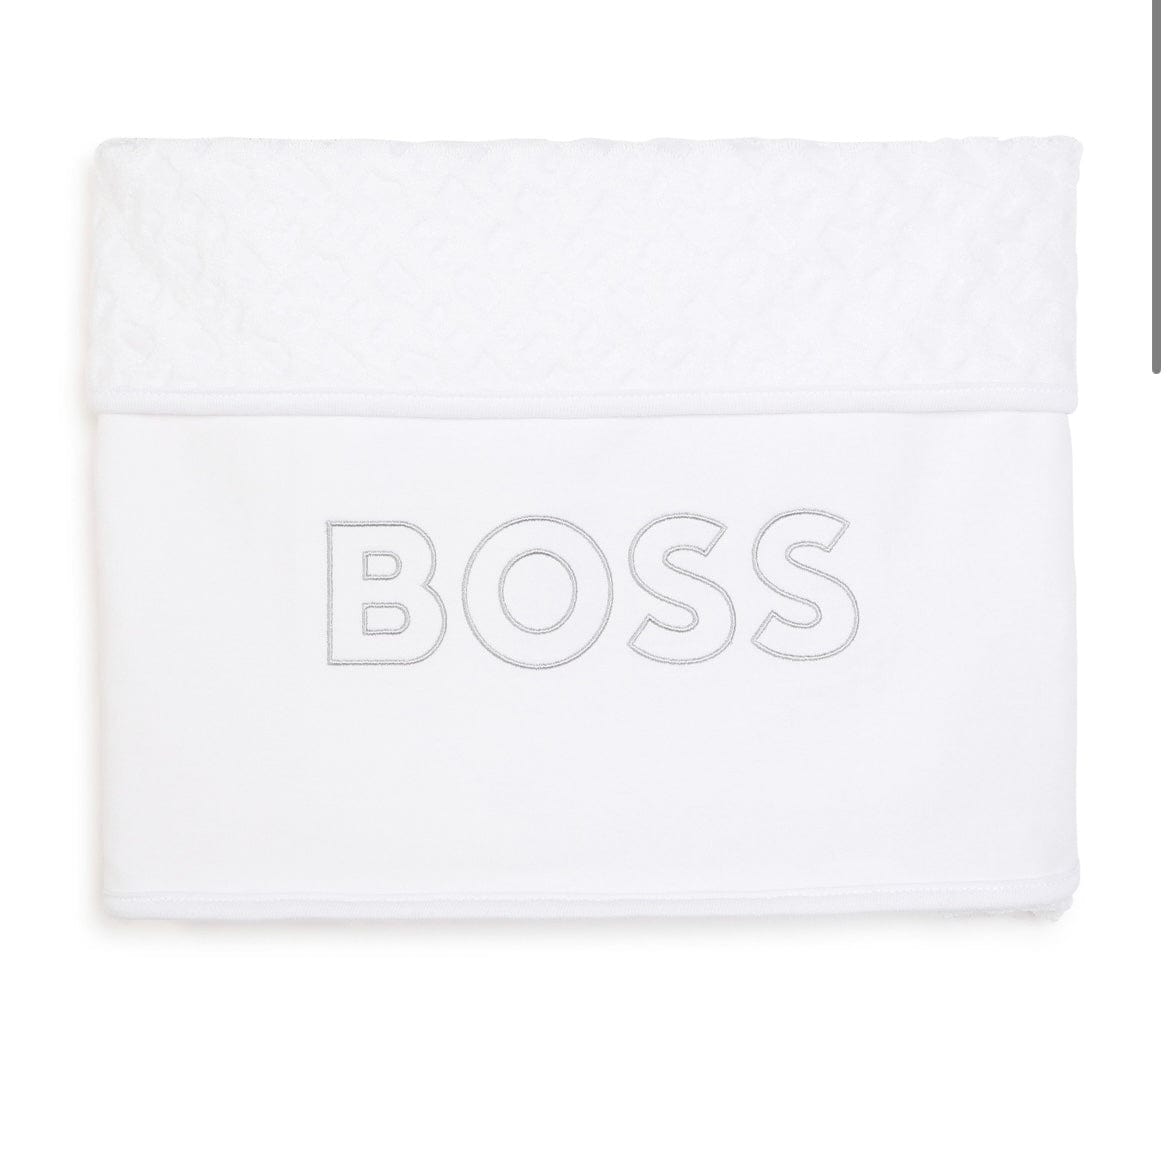 BOSS - Blanket - White